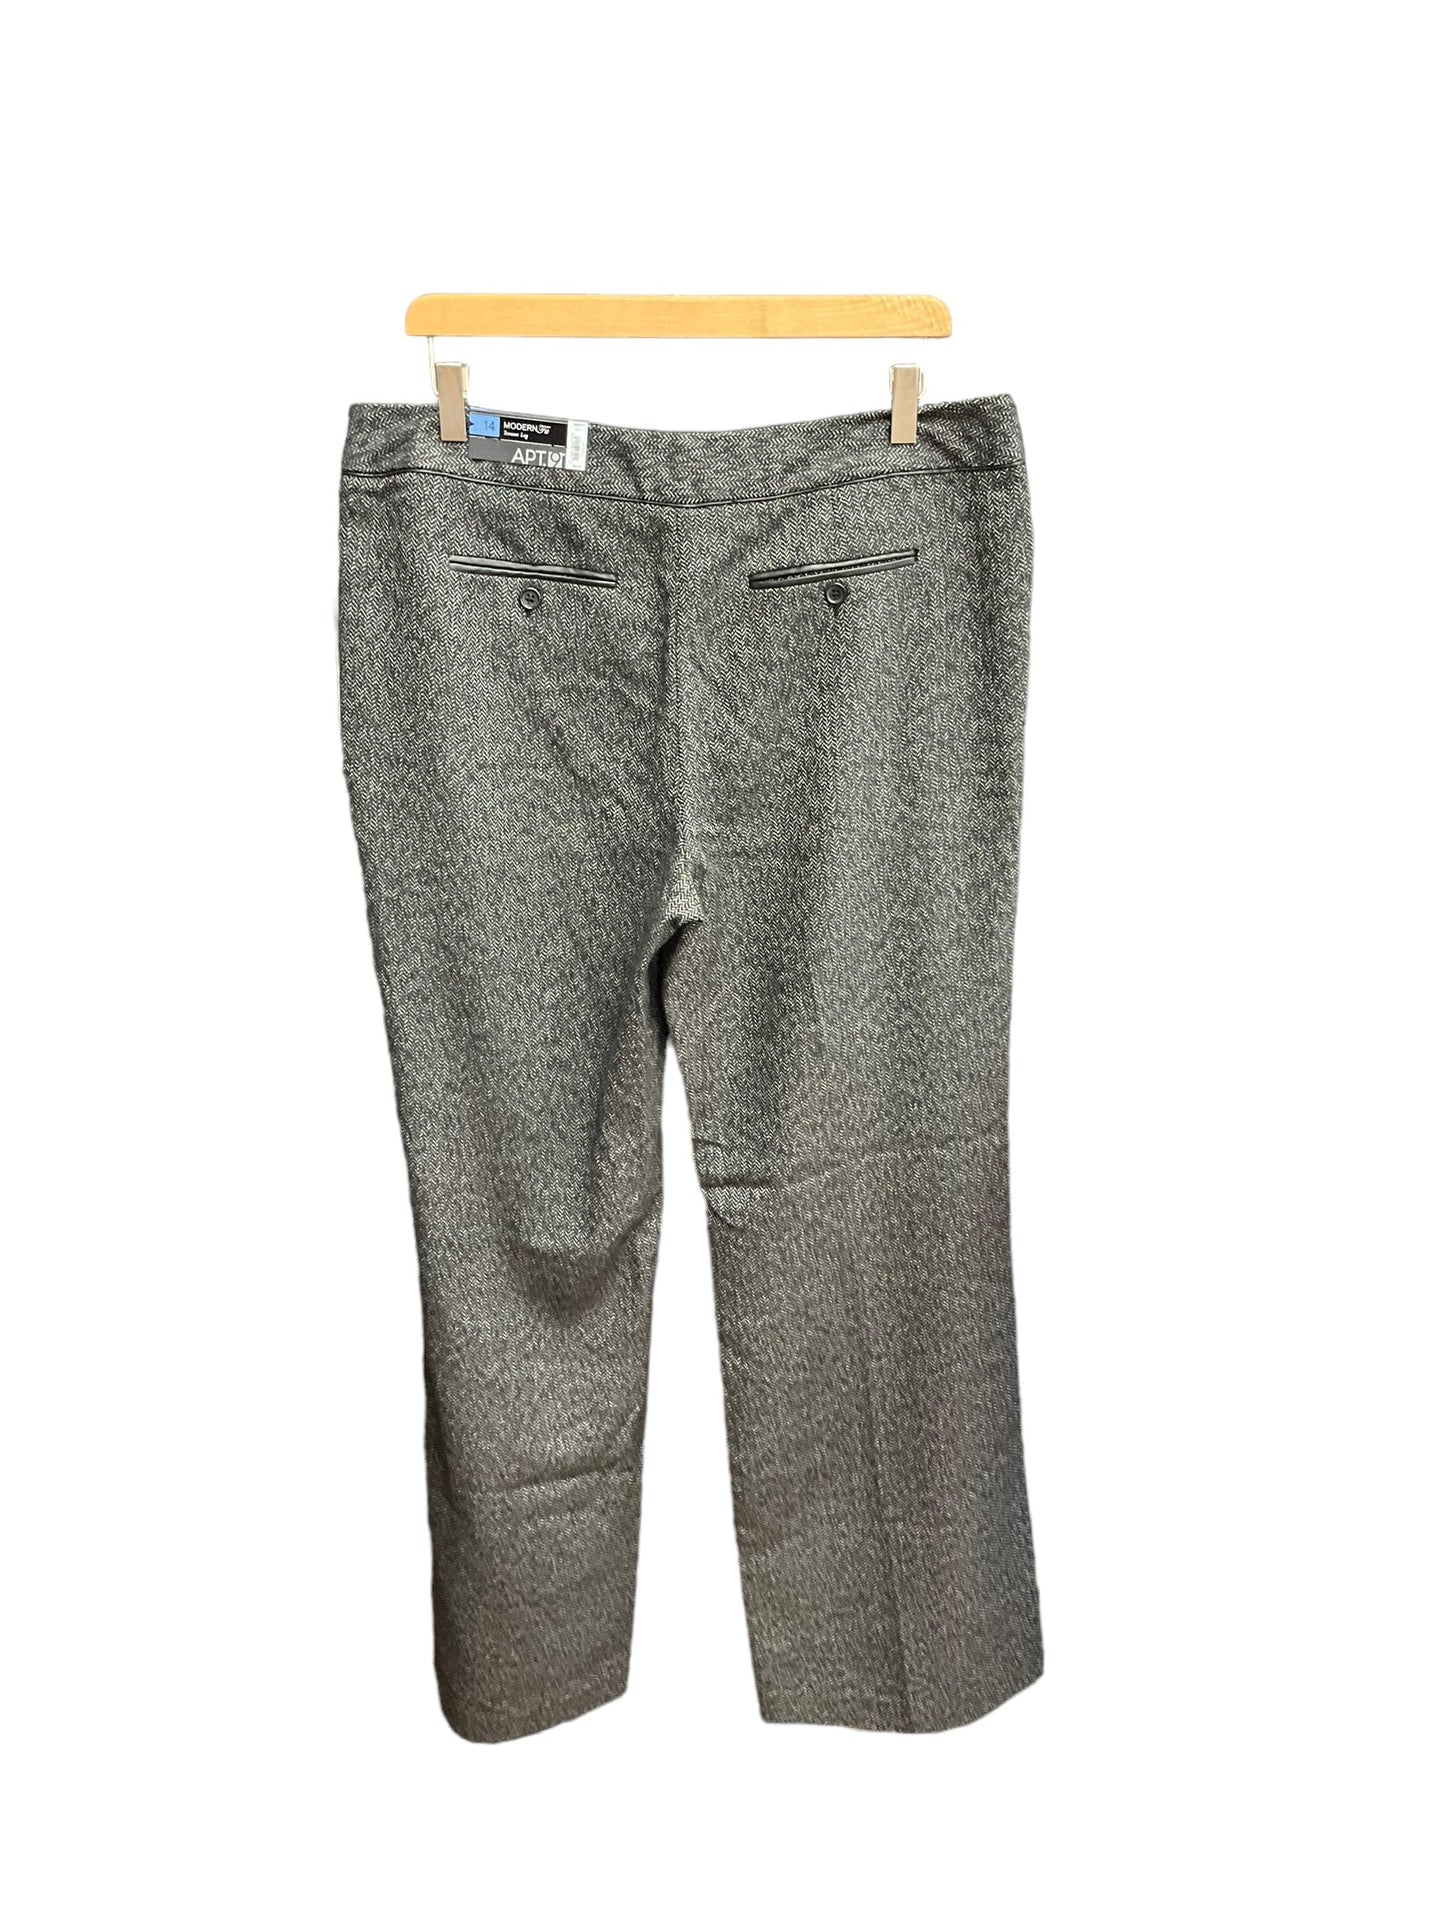 Grey Pants Dress Apt 9, Size 14